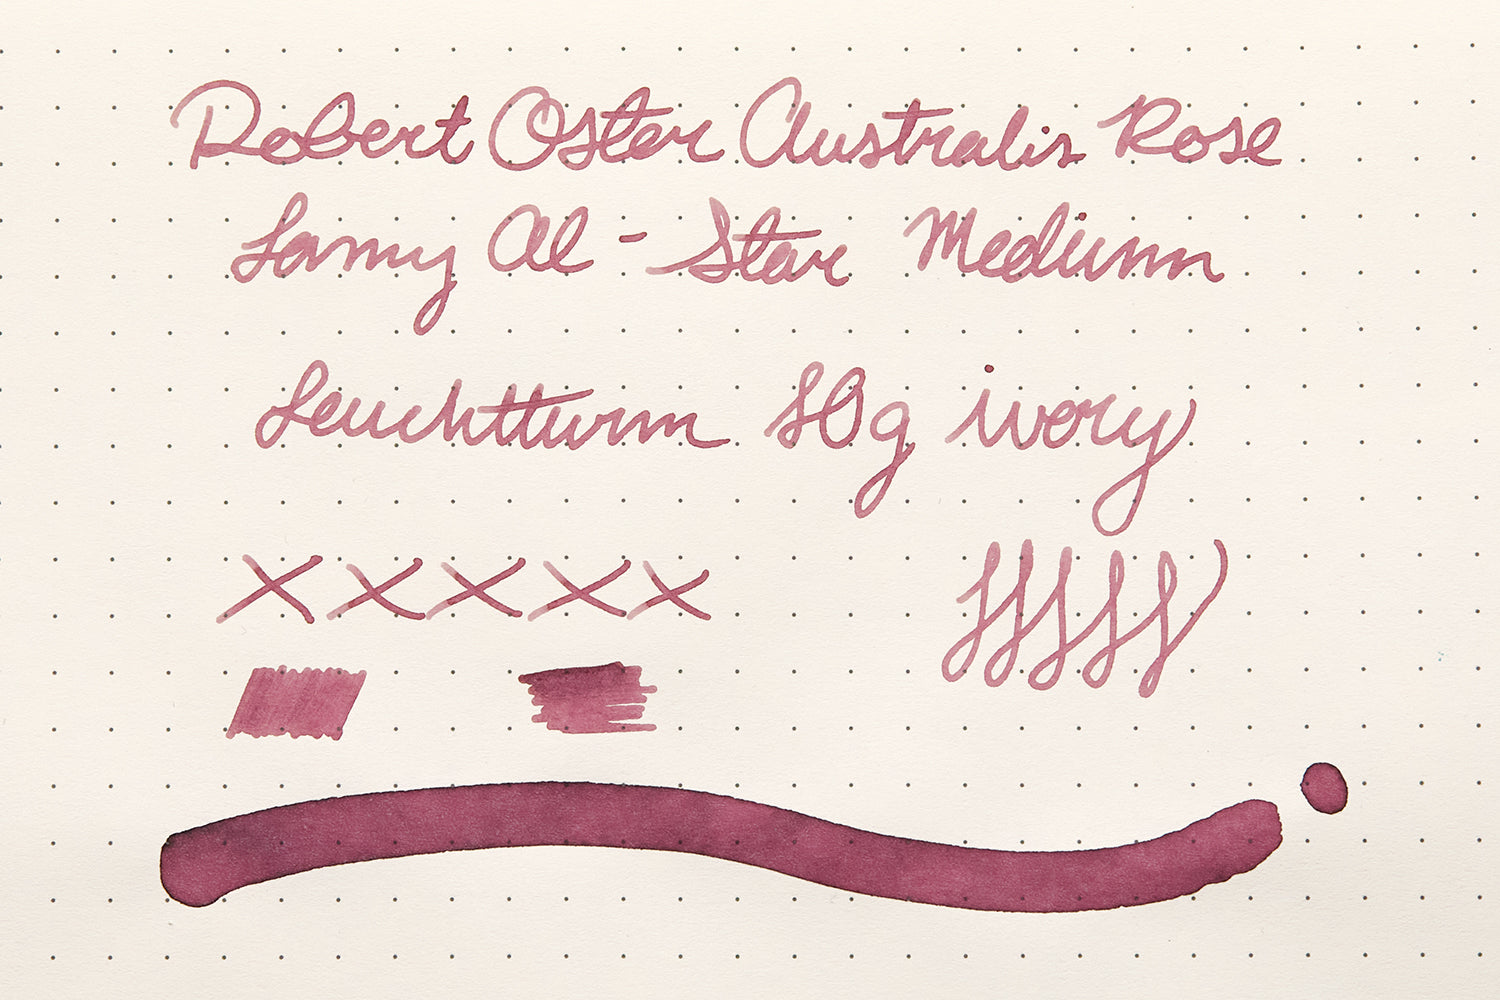 Robert Oster Australis Rose ink review on Leuchtturm paper